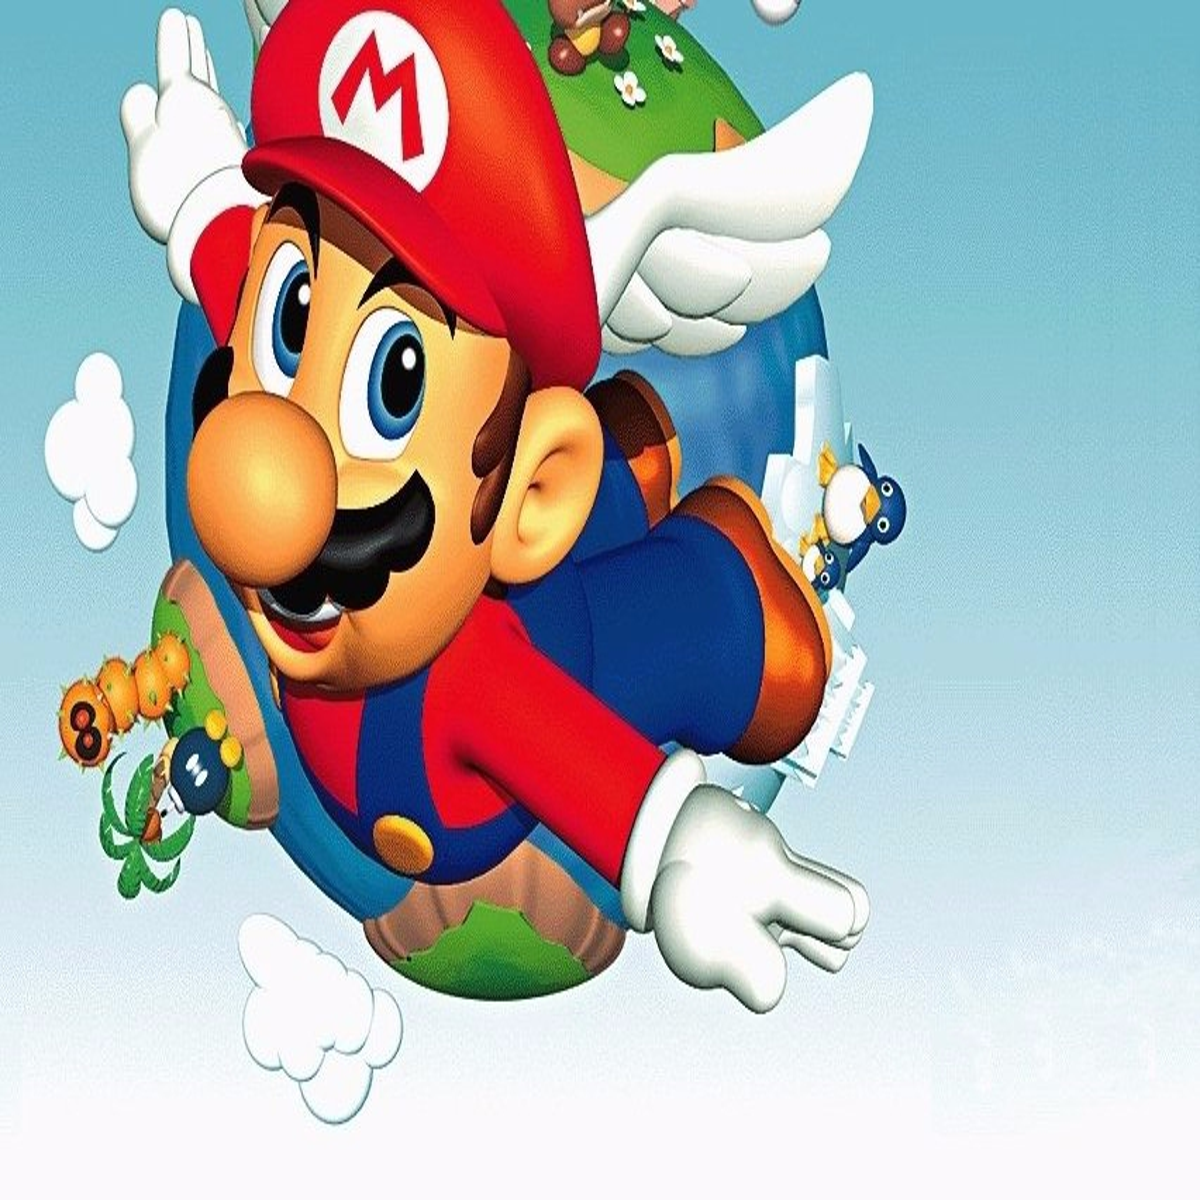 How Super Mario 64 Revolutionized Gaming